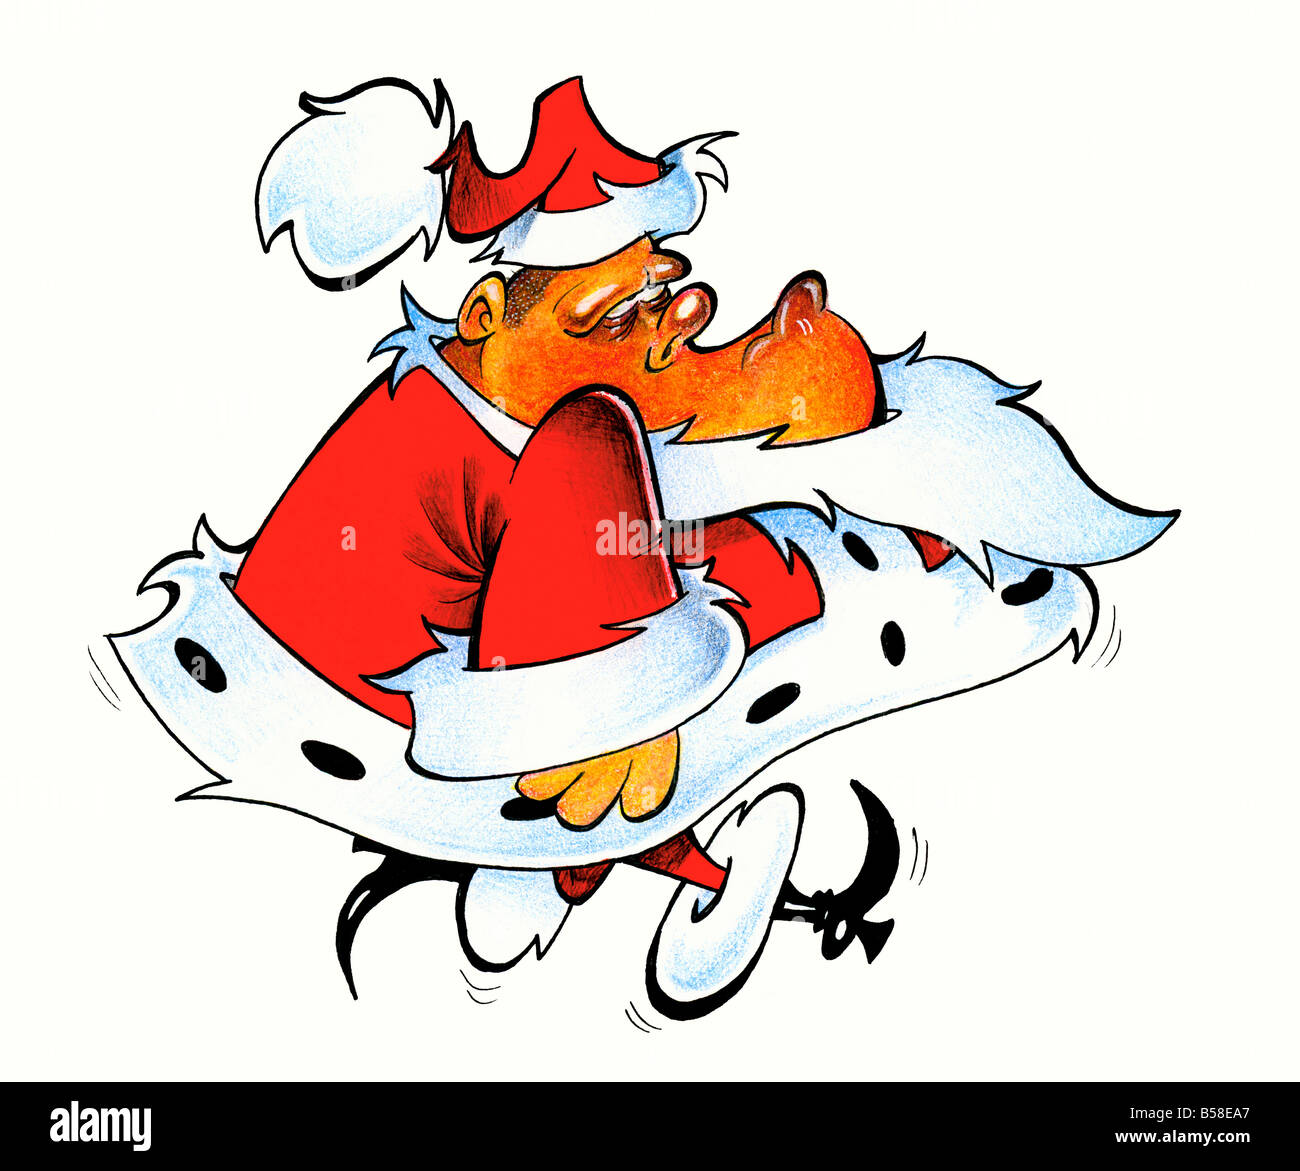 Santa Claus babbo natale chris kringle grumpy controllo due volte eve jolly vacanze ho-ho-ho la barba hat mantello irmin stivali rossi Foto Stock